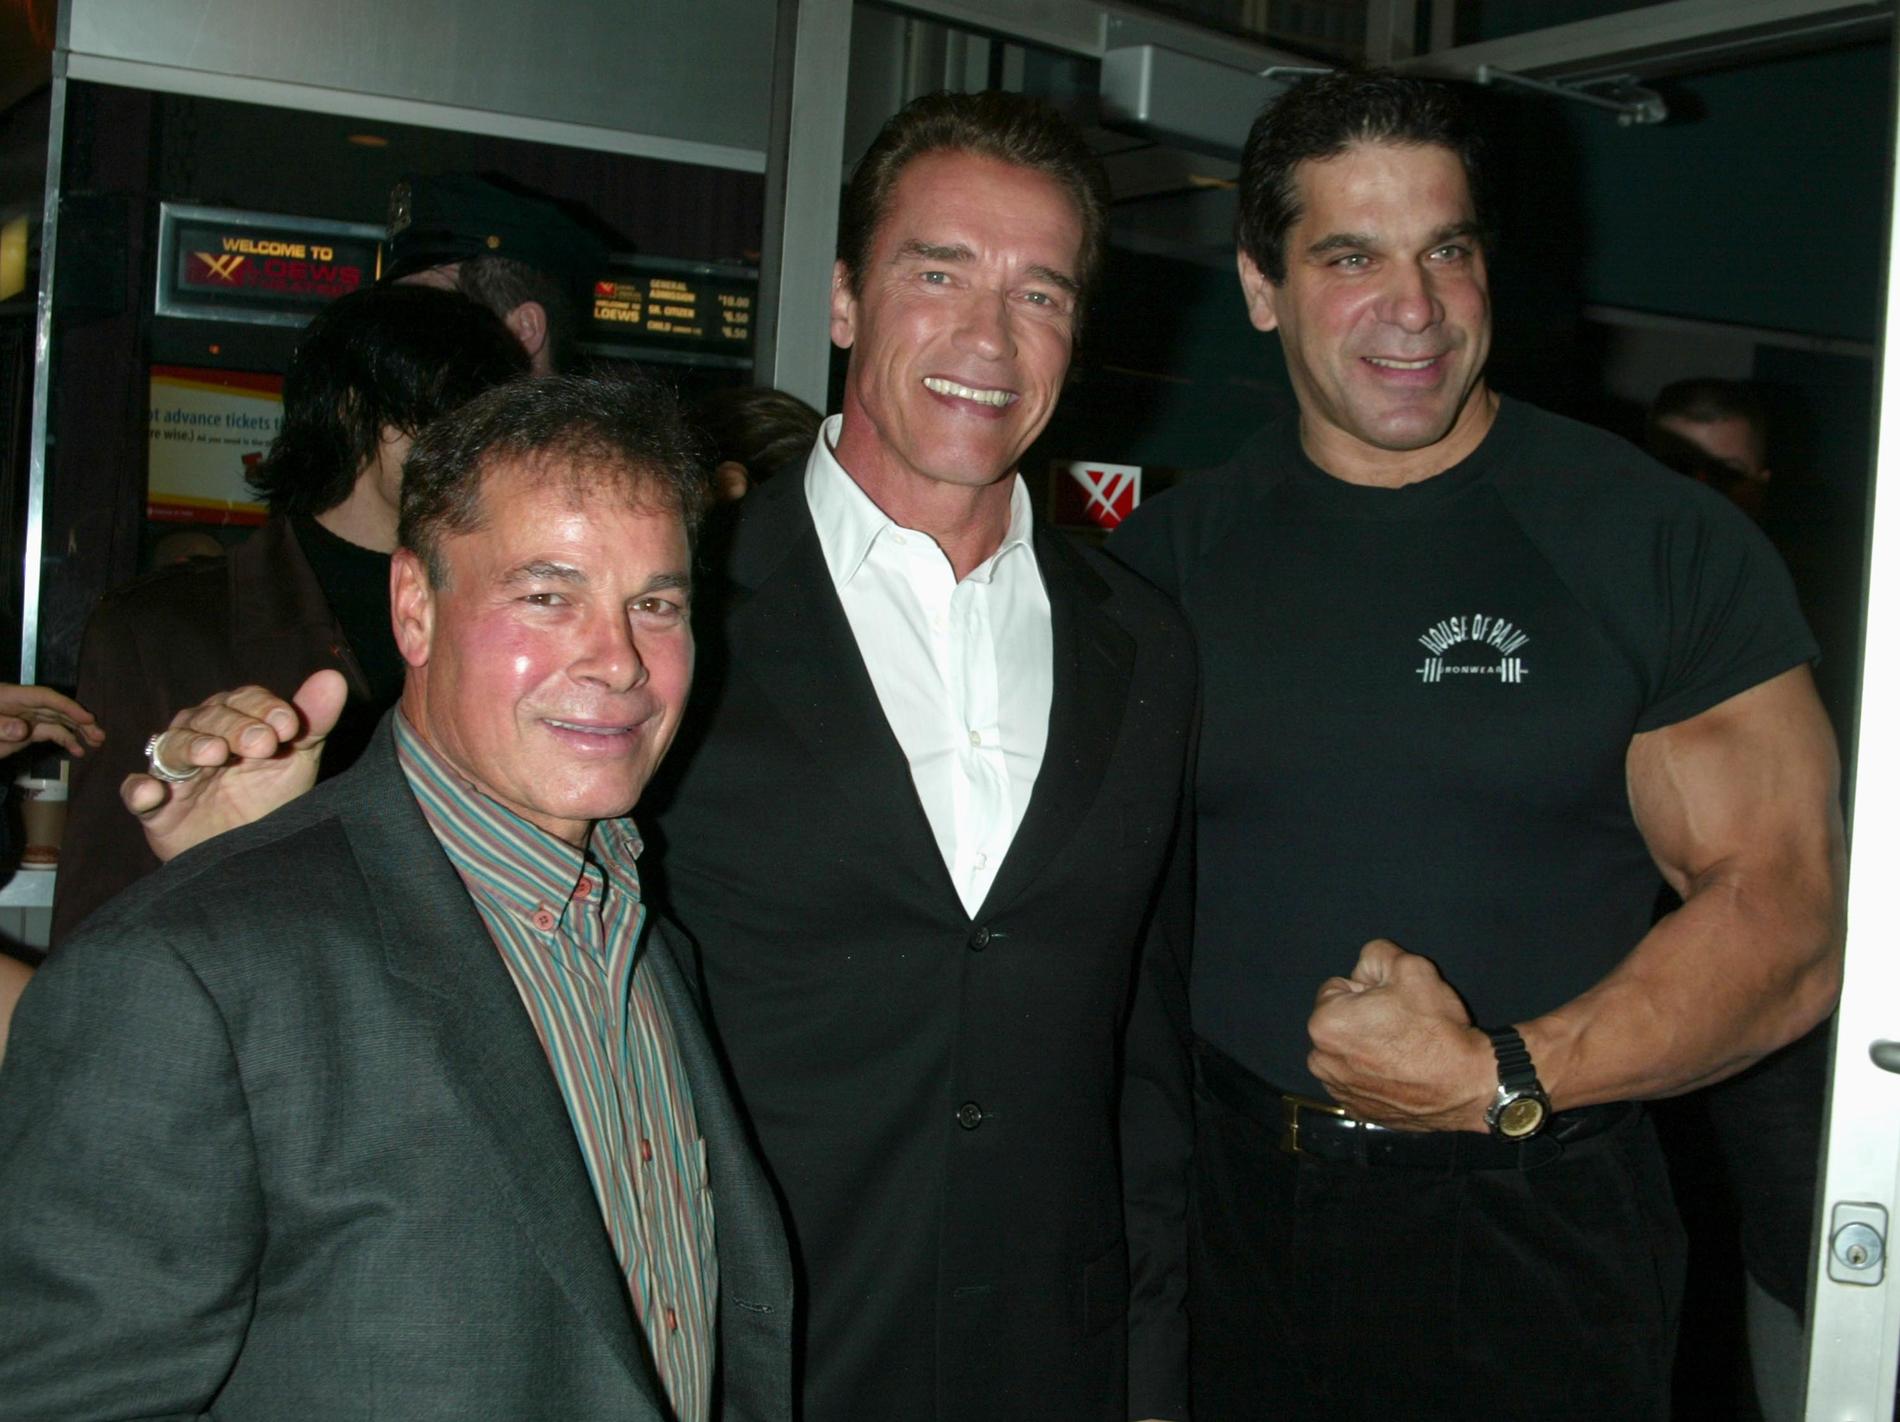 Franco Columbu, Arnold Schwarzenegger och Lou Ferrigno. ”Du var min allra bästa vän,” skrev Schwarzenegger på Instagram efter dödsbeskedet.